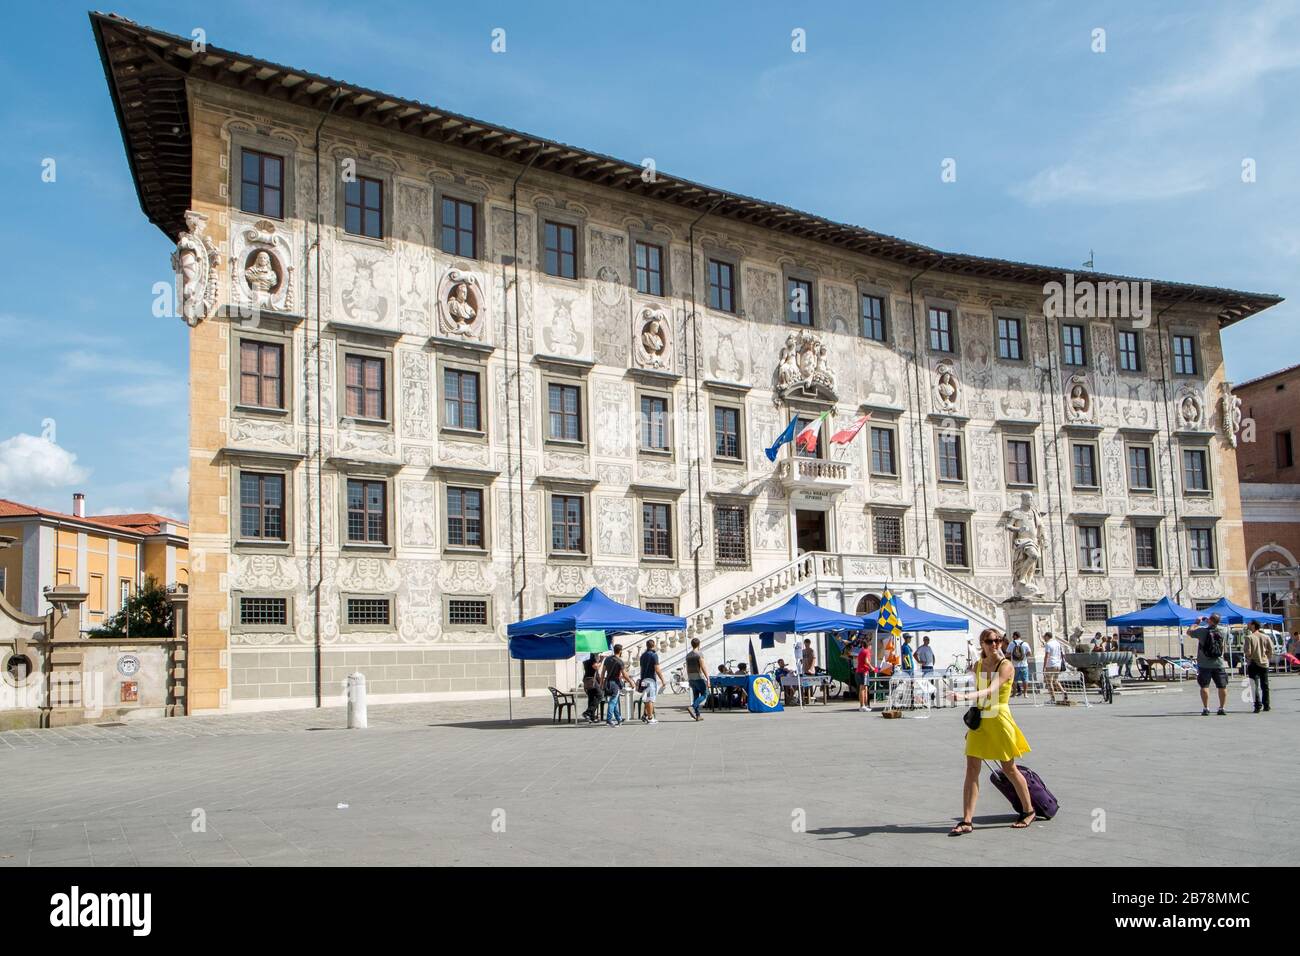 Palazzo della Carovana, the main building of the world famous university Scuola Normale Superiore at Piazza dei Cavalieri in Pisa Italy Stock Photo